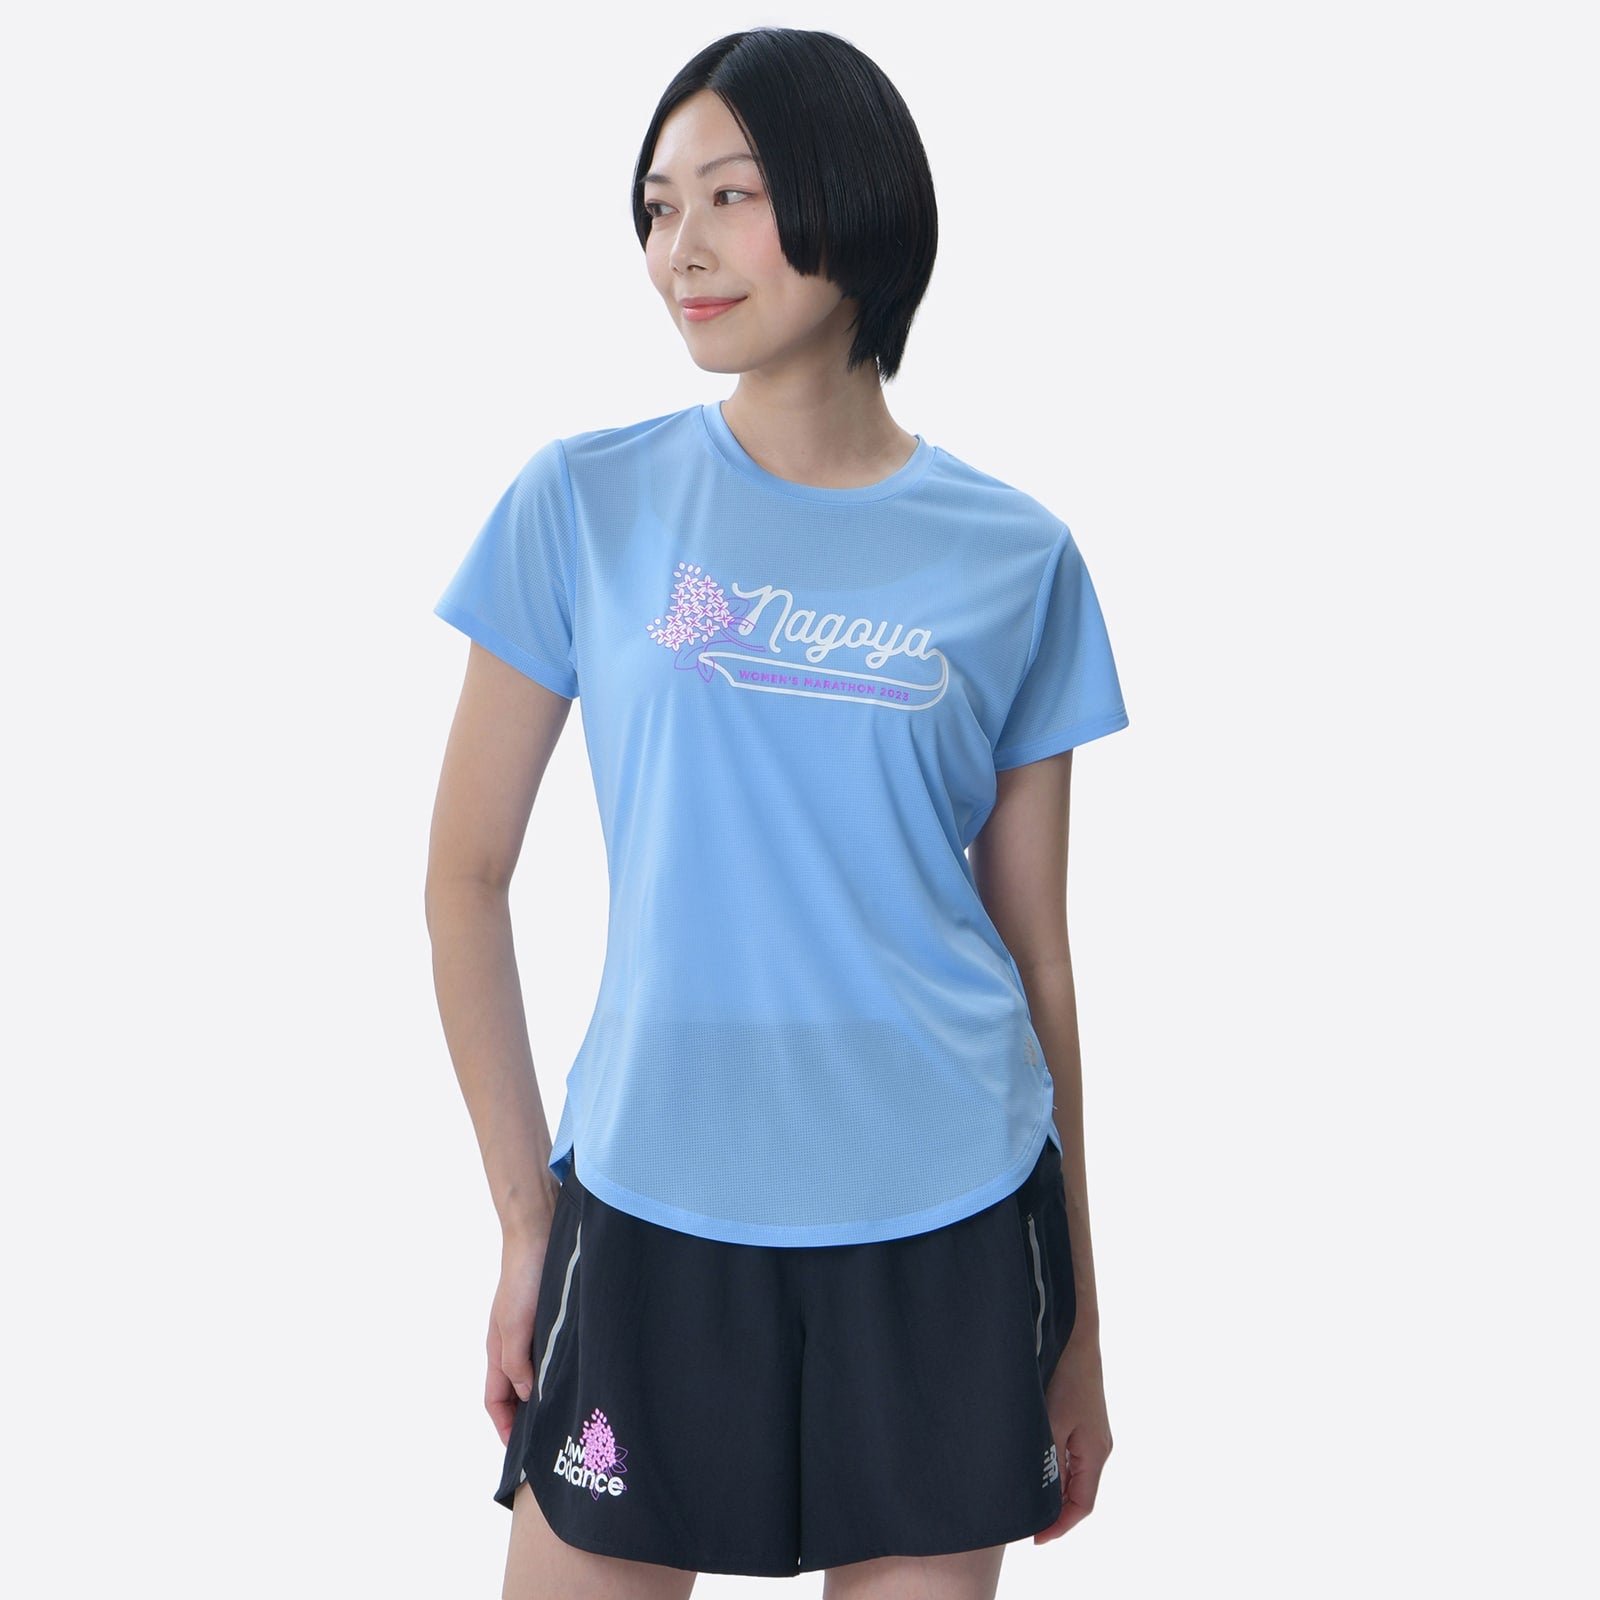 名古屋ウィメンズマラソン フローラルショートスリーブTシャツ